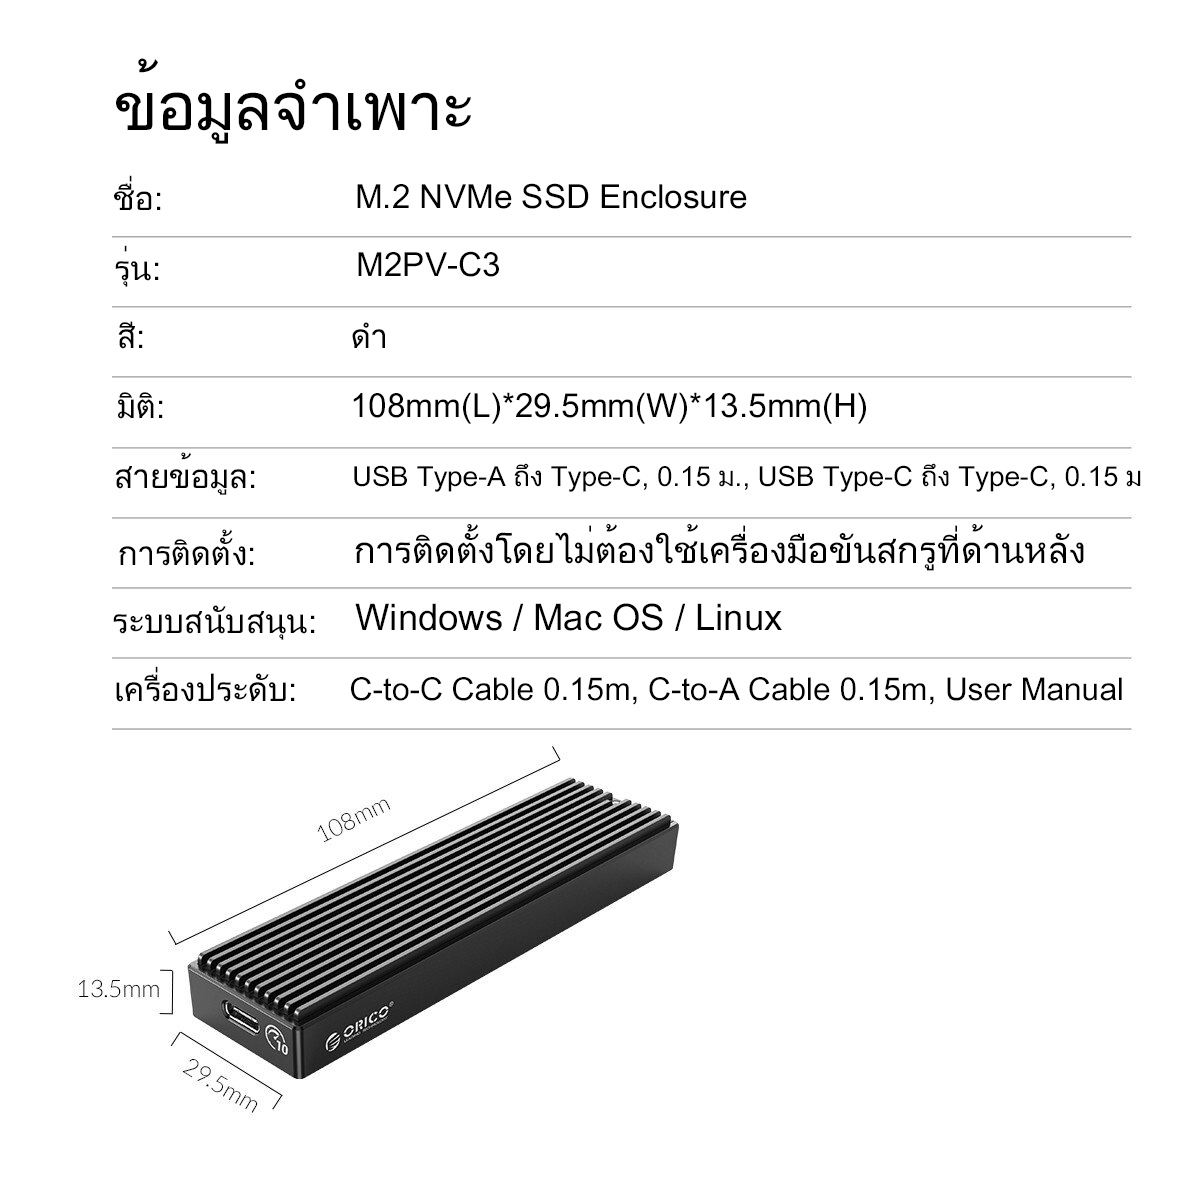 ภาพอธิบายเพิ่มเติมของ ORICO external hard disk กล่องใส่ฮารดิส  M.2 NVME M2PV-C3 hard disk SSD 2tb สำหรับ HDD/SSD  ฮาร์ดดิส ฮาร์ดดิสพกพา ฮาร์ดไดรฟ์ภายนอก Mobile Enclosure Alm Alloy USB3.1 10Gbps 2230/2242/2260/2280